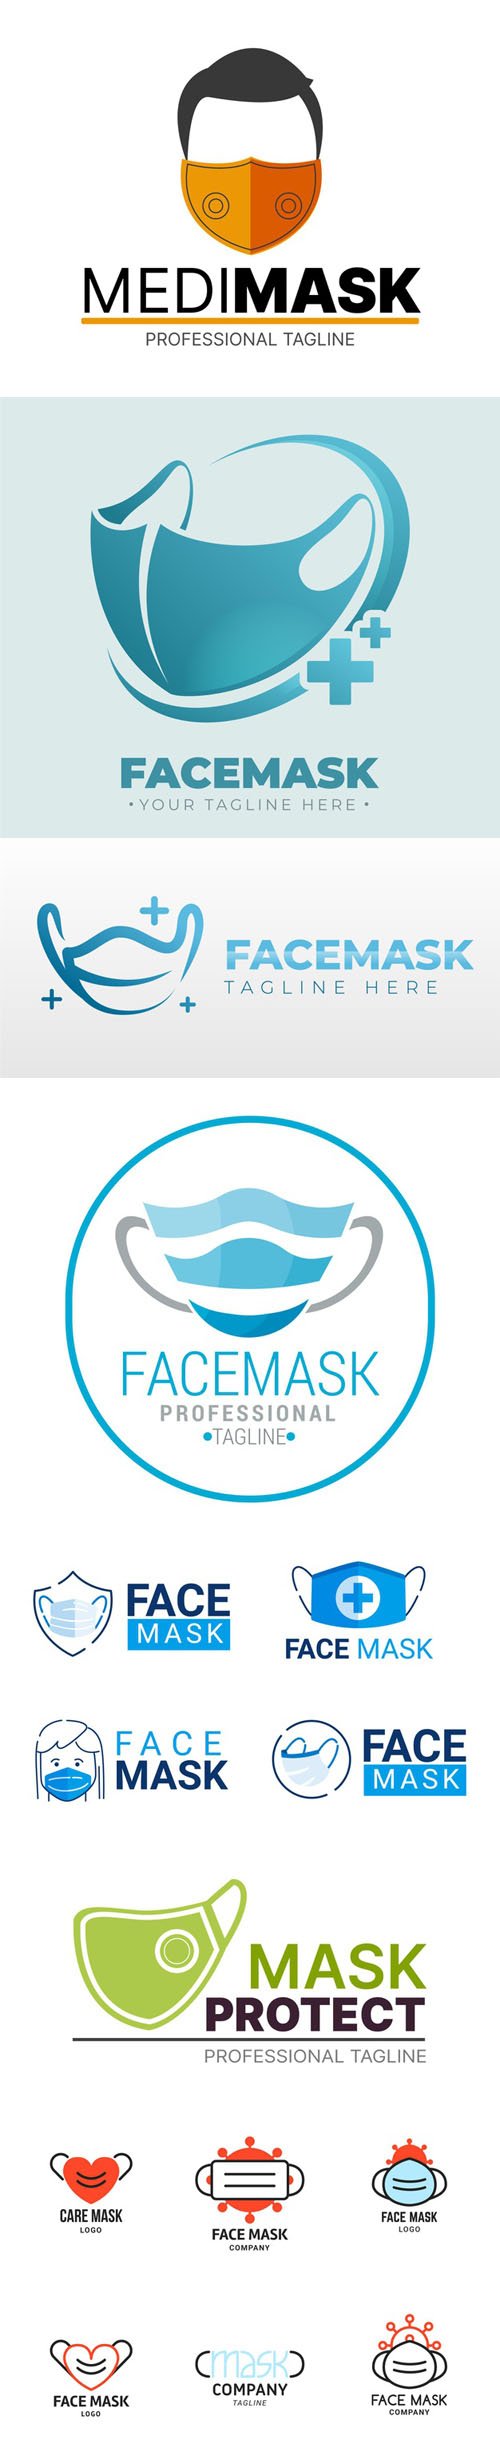 15 Face Mask Logos Templates in Vector